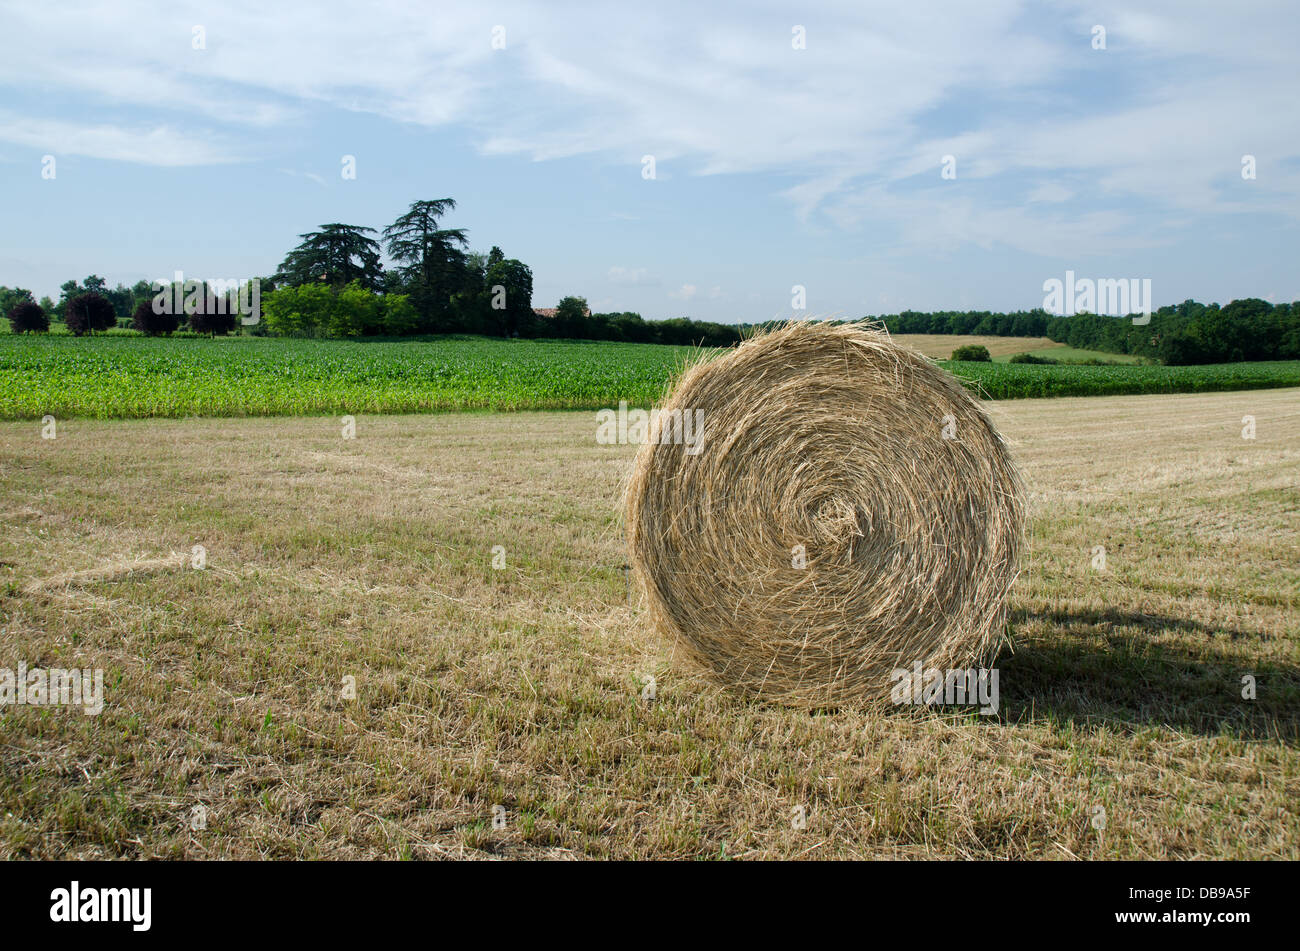 Single hay bale in a field Stock Photo